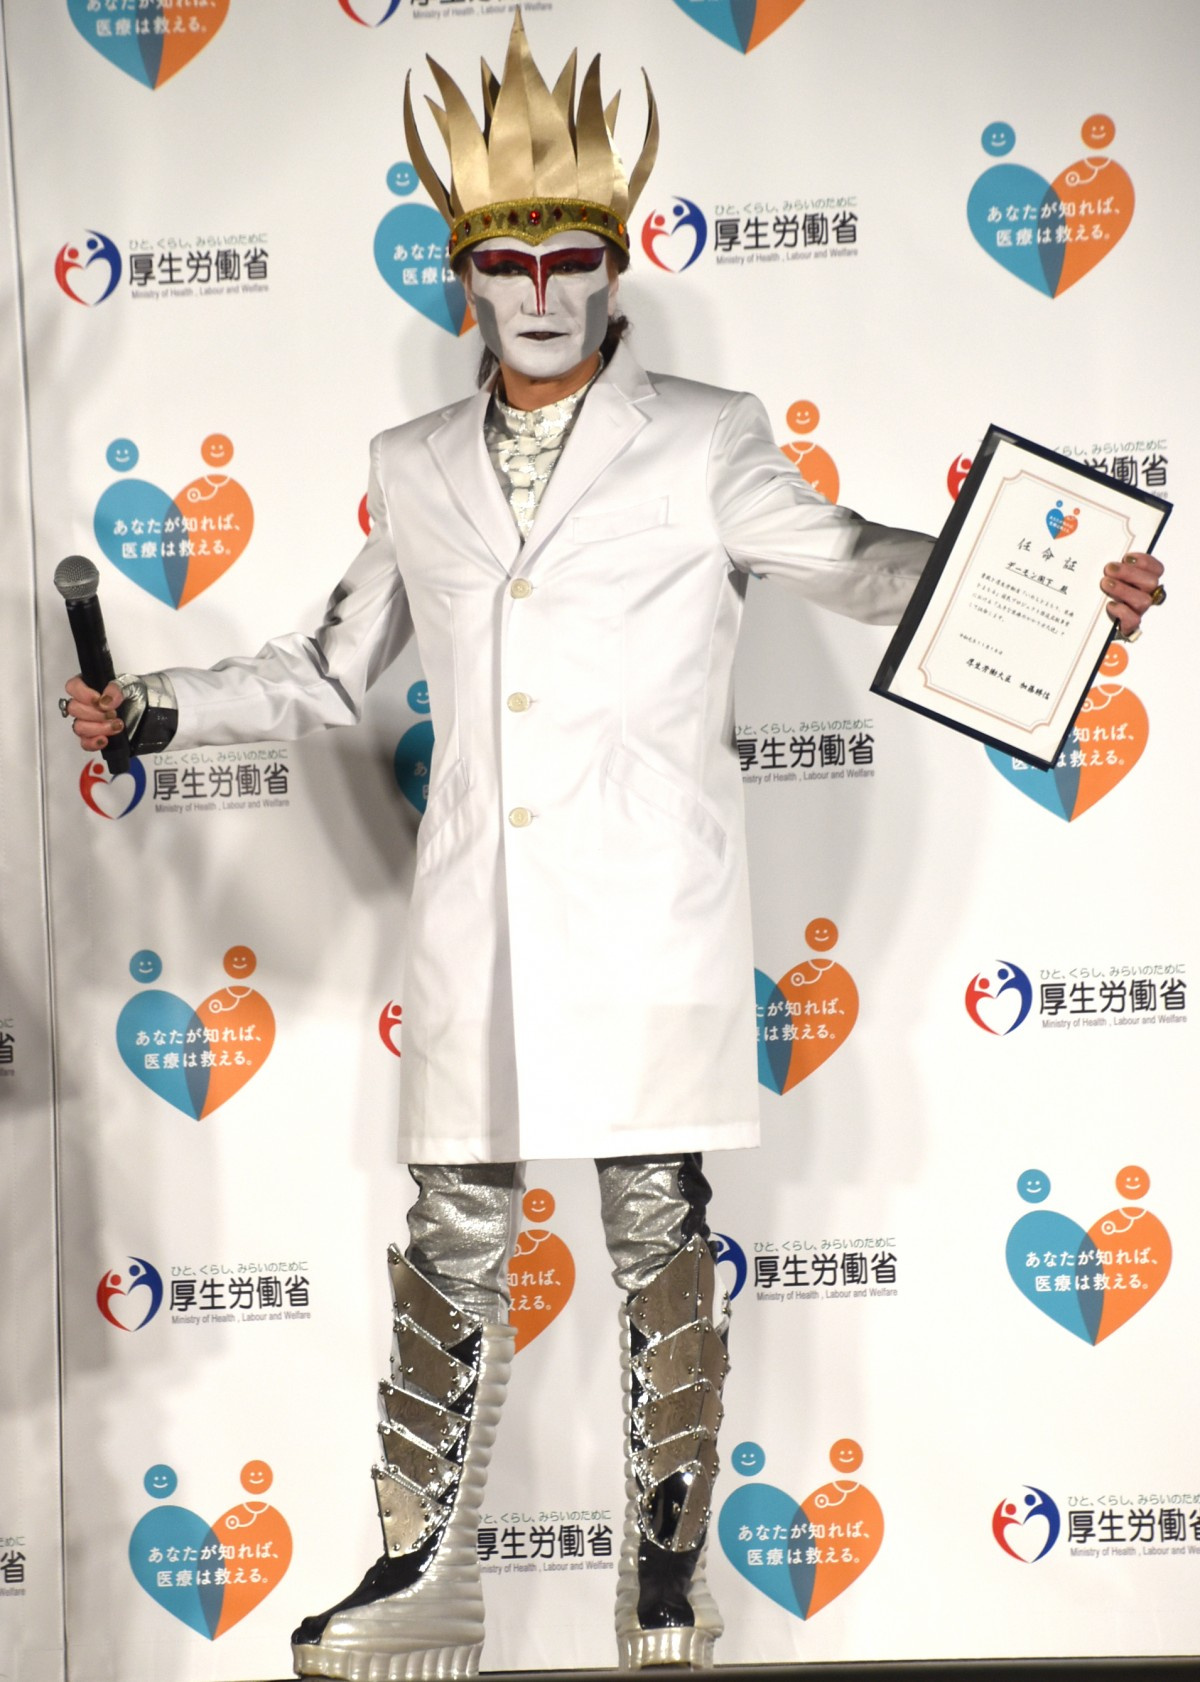 デーモン閣下 白衣の悪魔 に変身 医療現場の代弁者として Oricon News